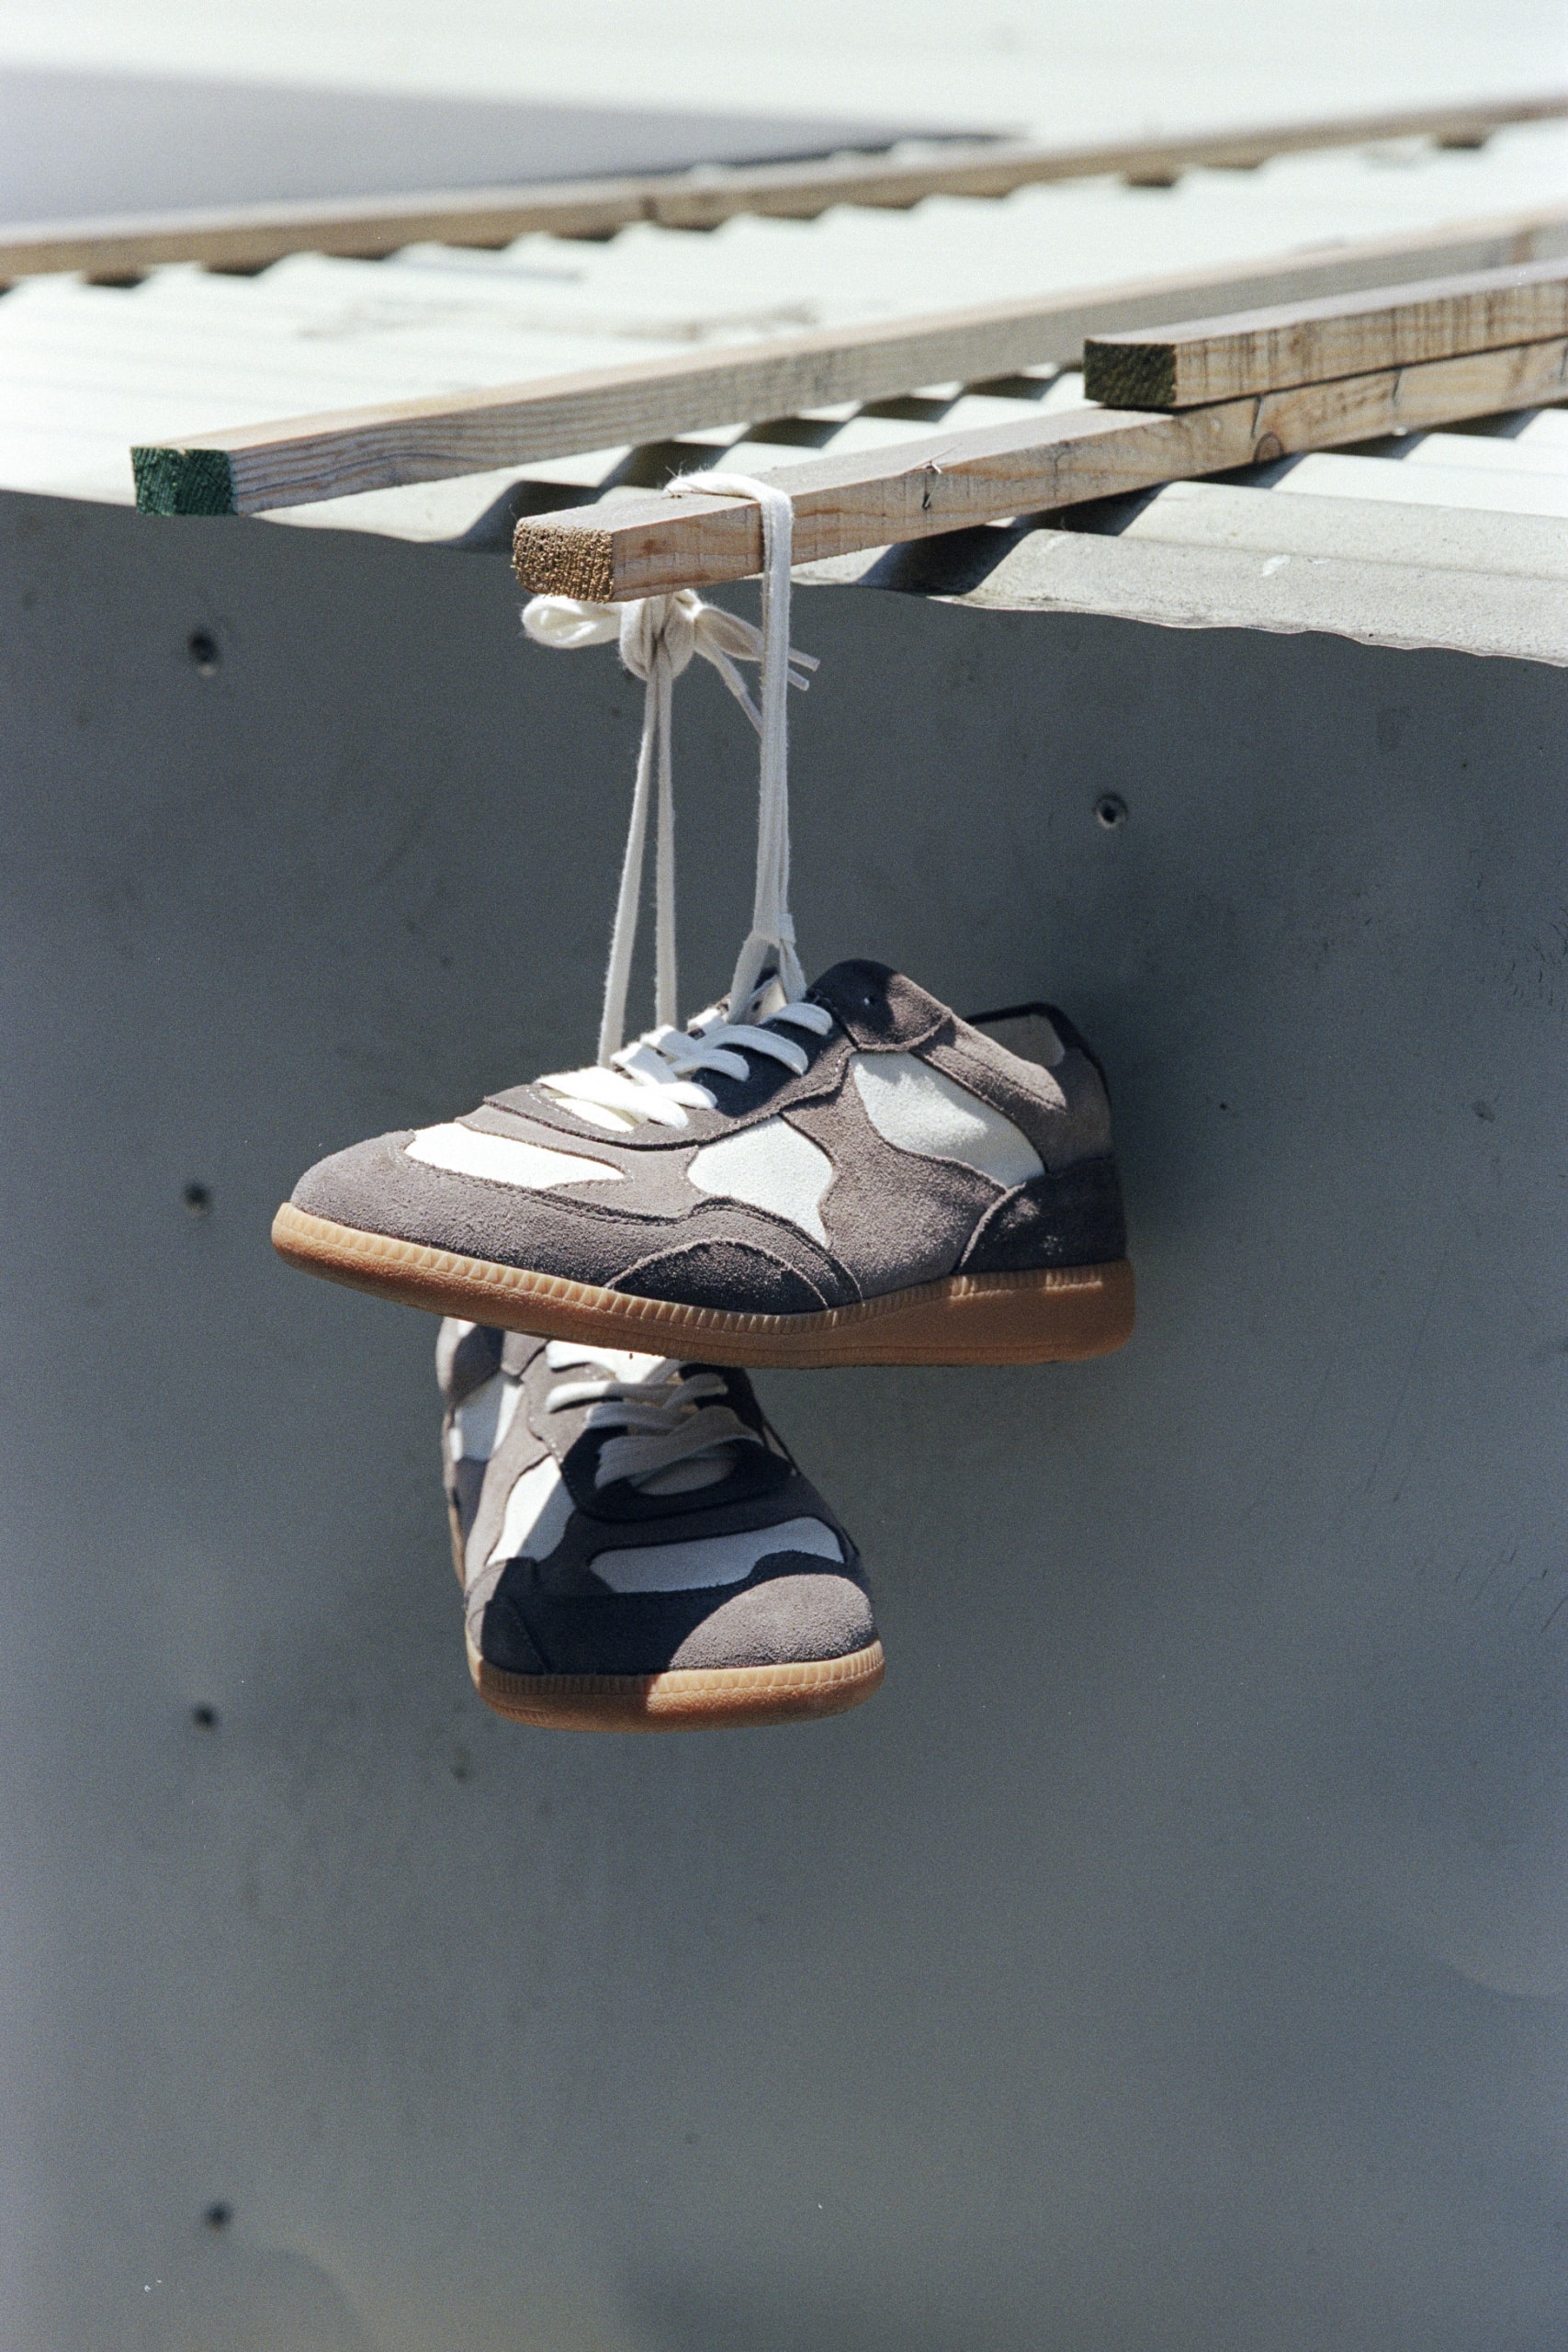 ROARINGWILD 推出首双德训鞋款「TRAINER 01」